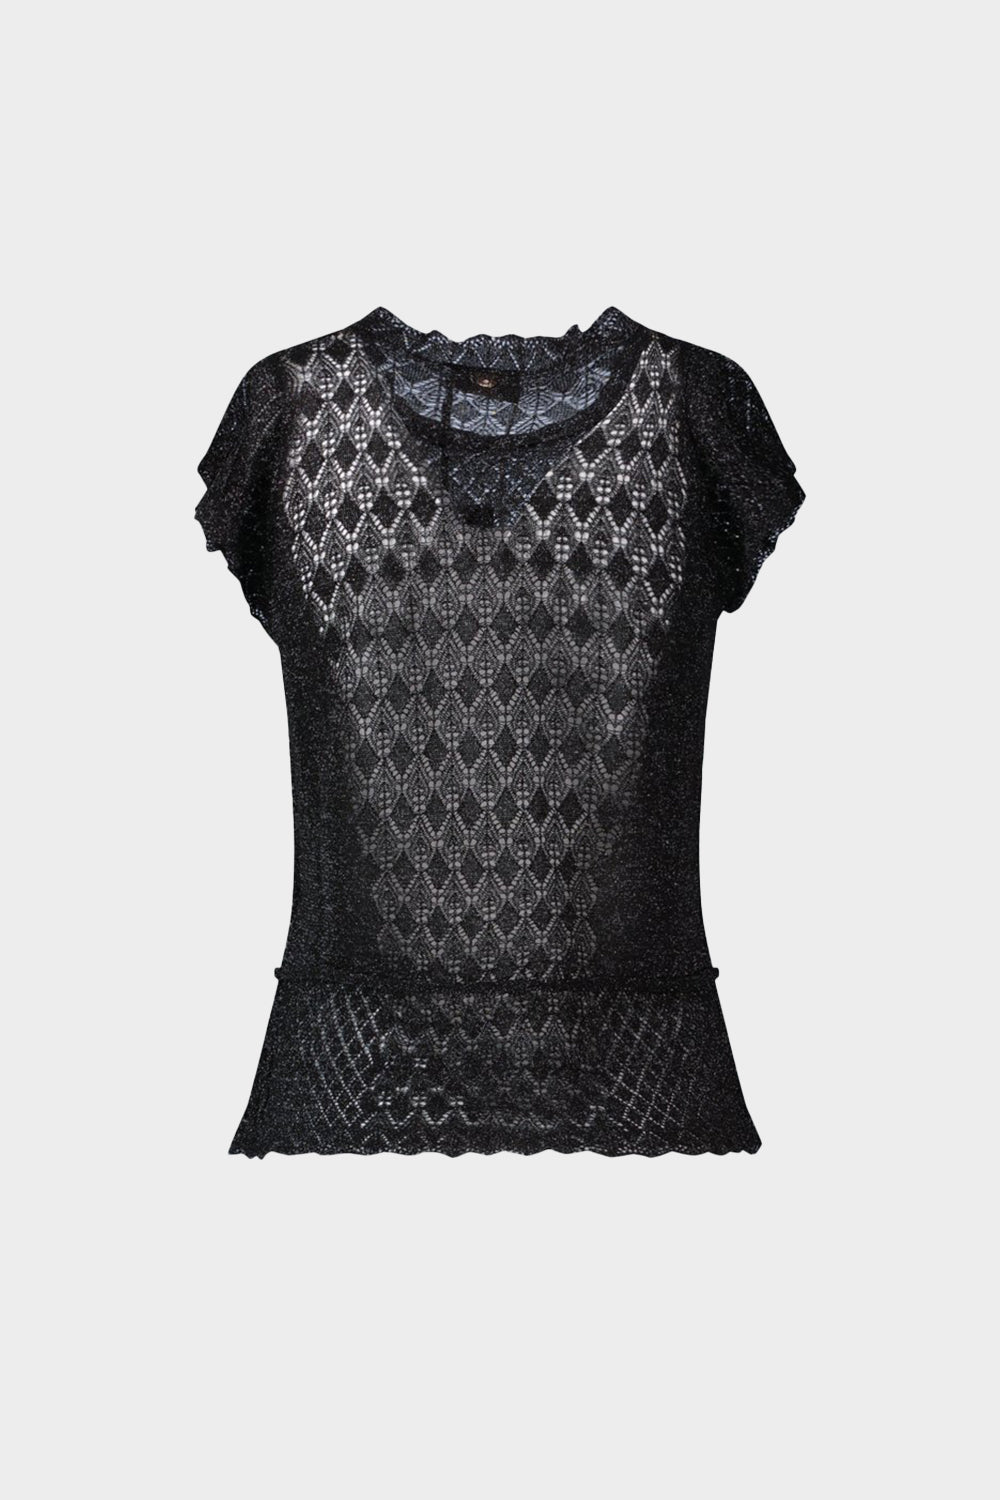 חולצת סלסולים לנשים עיטורי תחרה LIU JO Vendome online | ונדום .